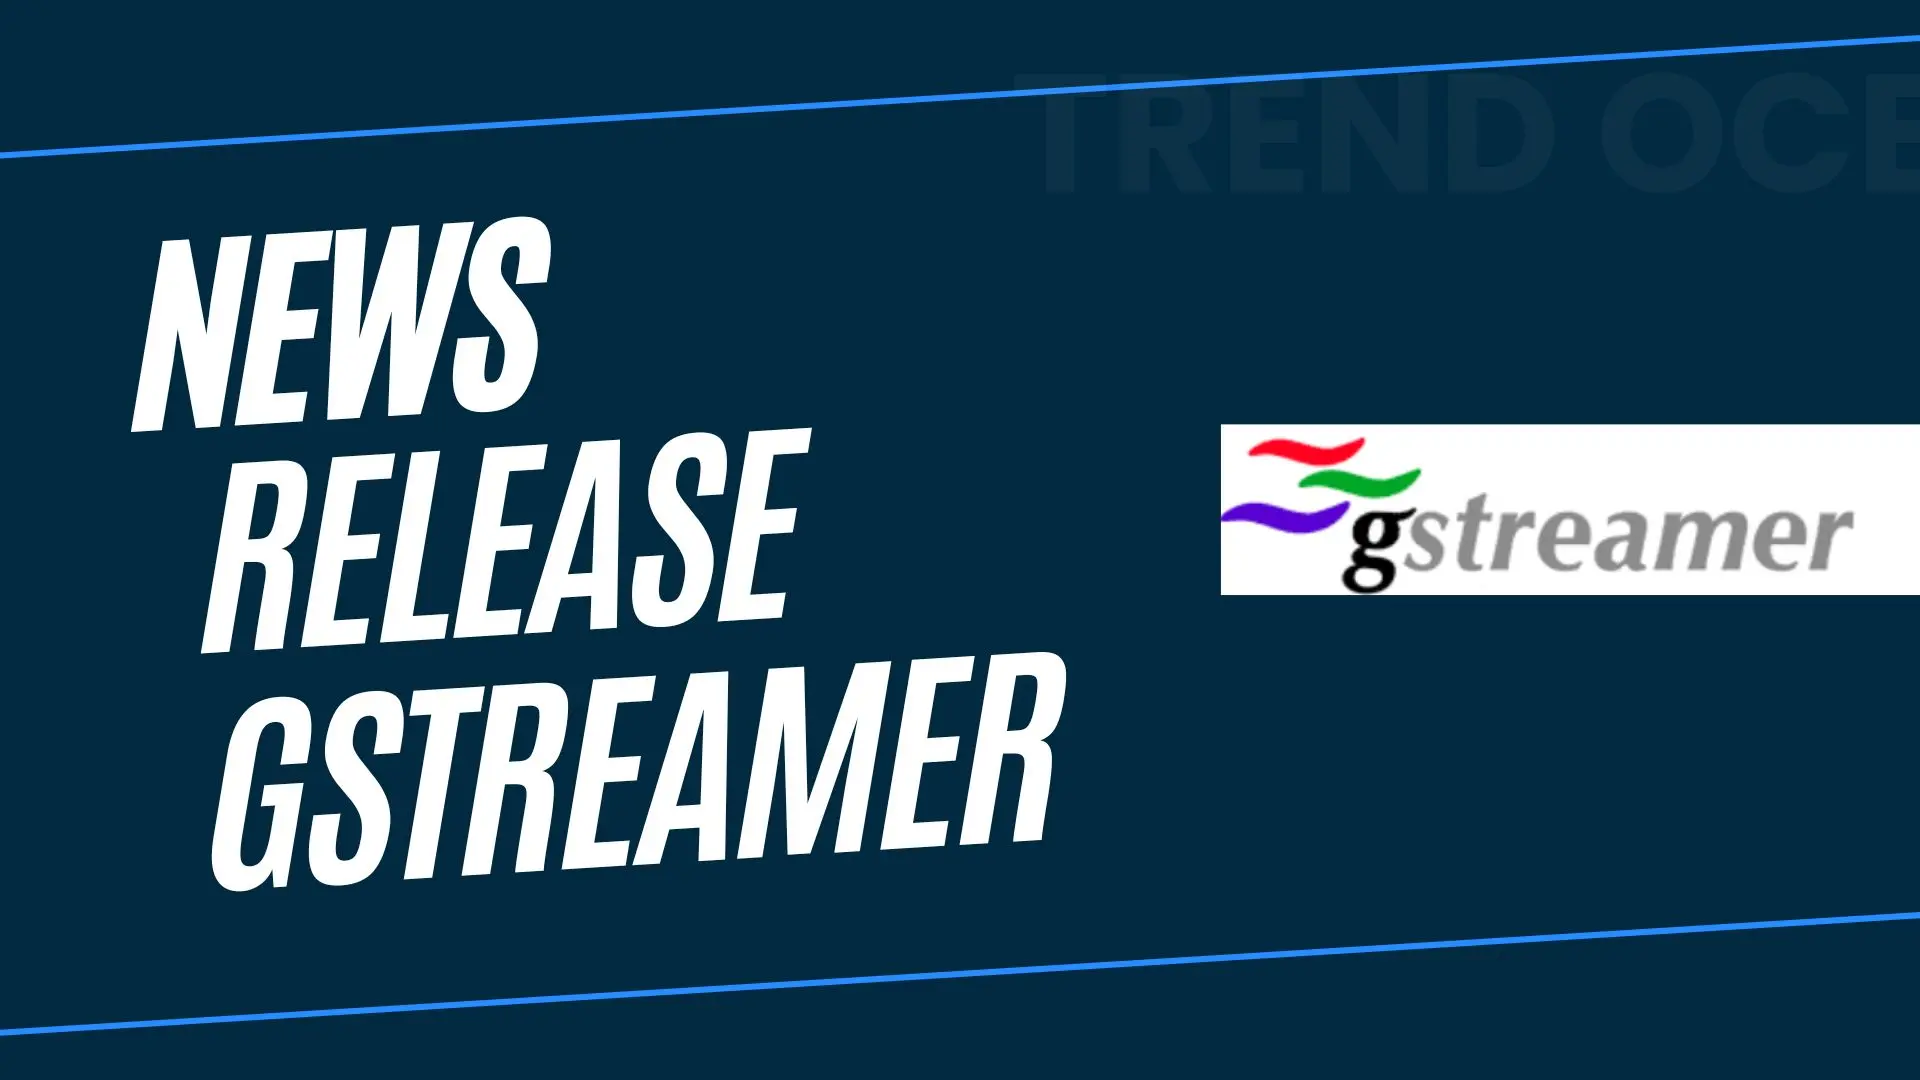 New release of GStreamer